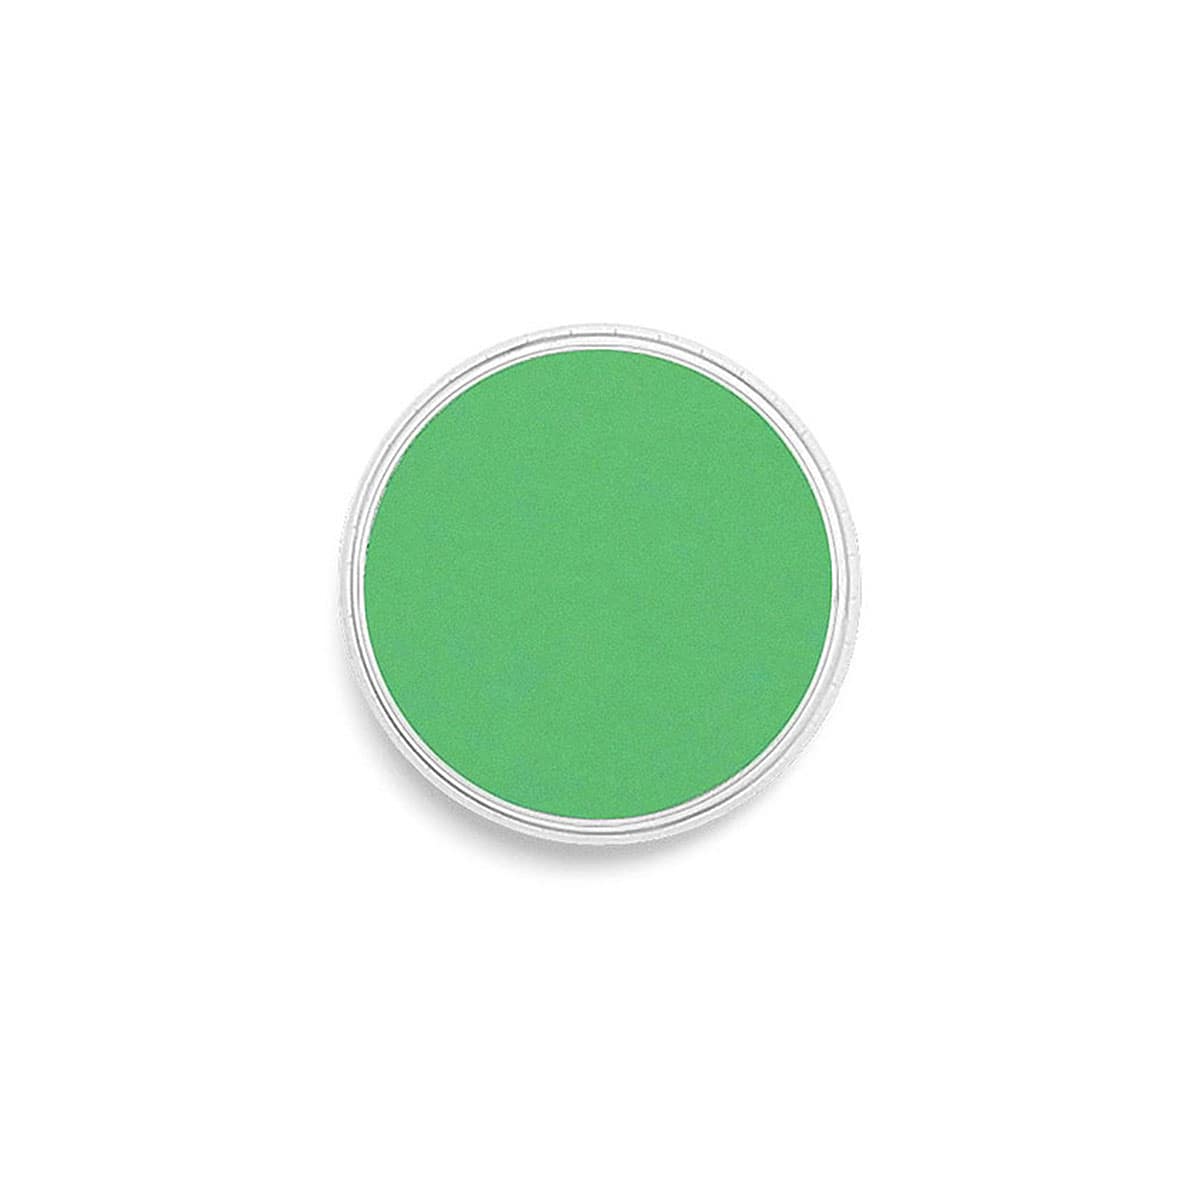 #panpastel-farbe_6405 permanentgrün